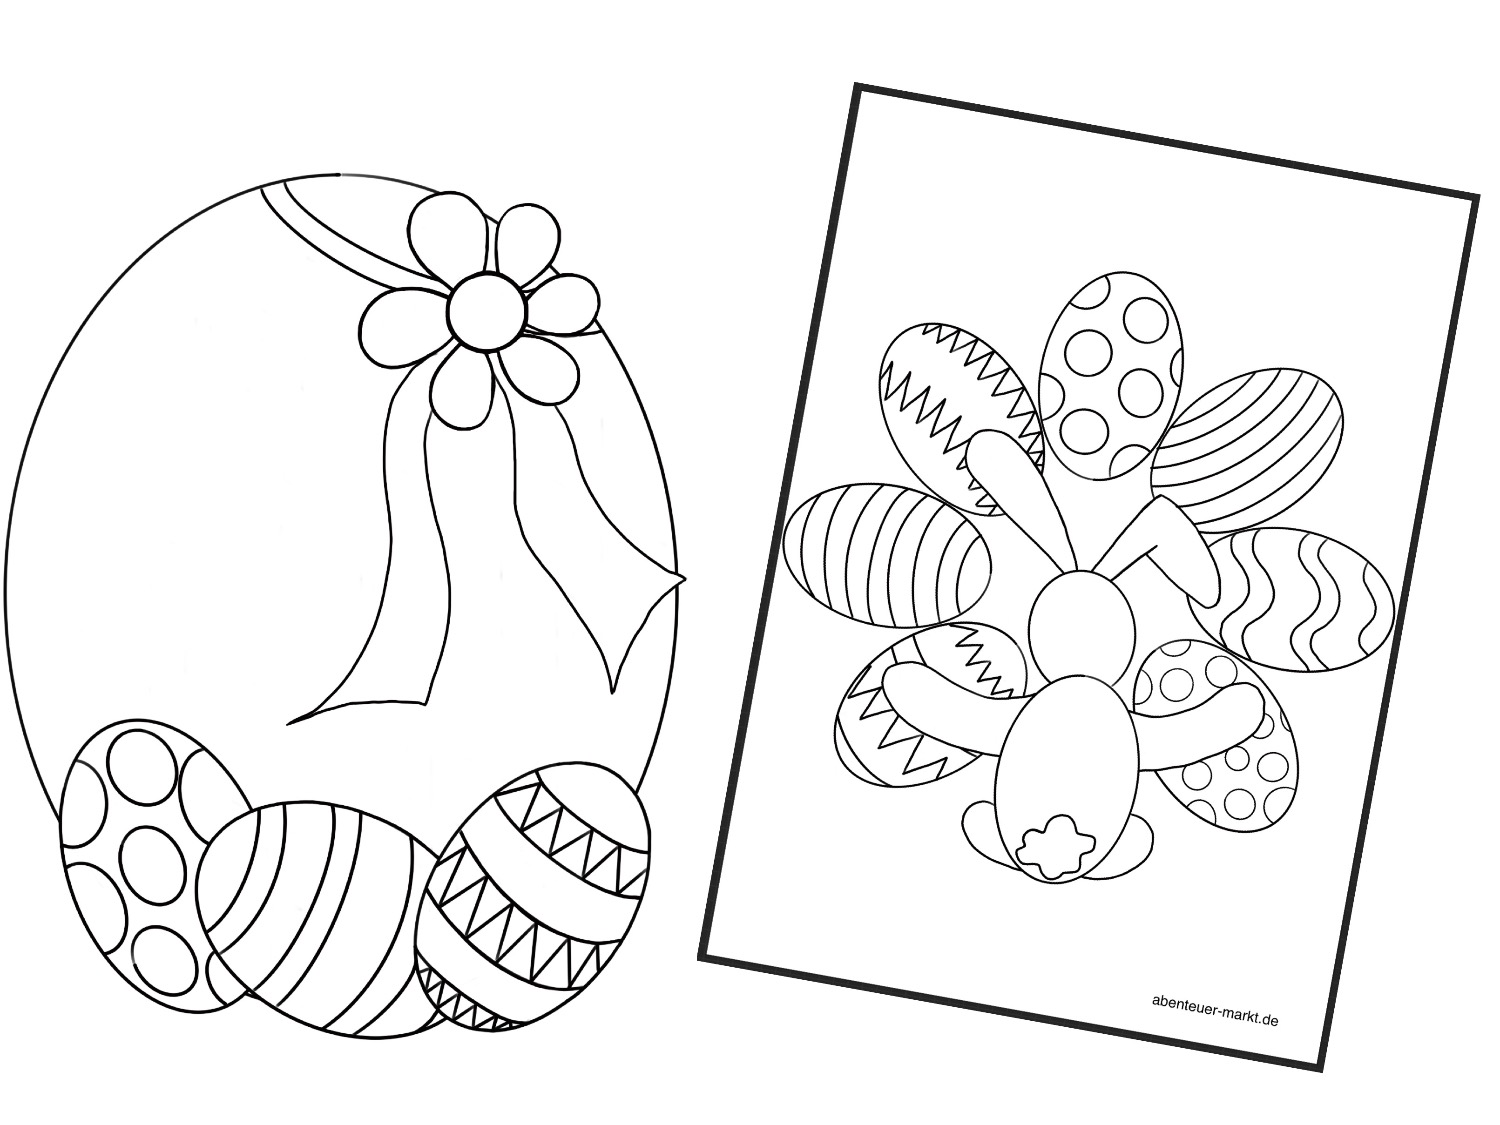 Bild zum Schritt 7 für das Bastel- und DIY-Abenteuer für Kinder: 'Ausmalbilder/Mandalas zu Ostern - Ostereier (8 Stück) findest du ...'